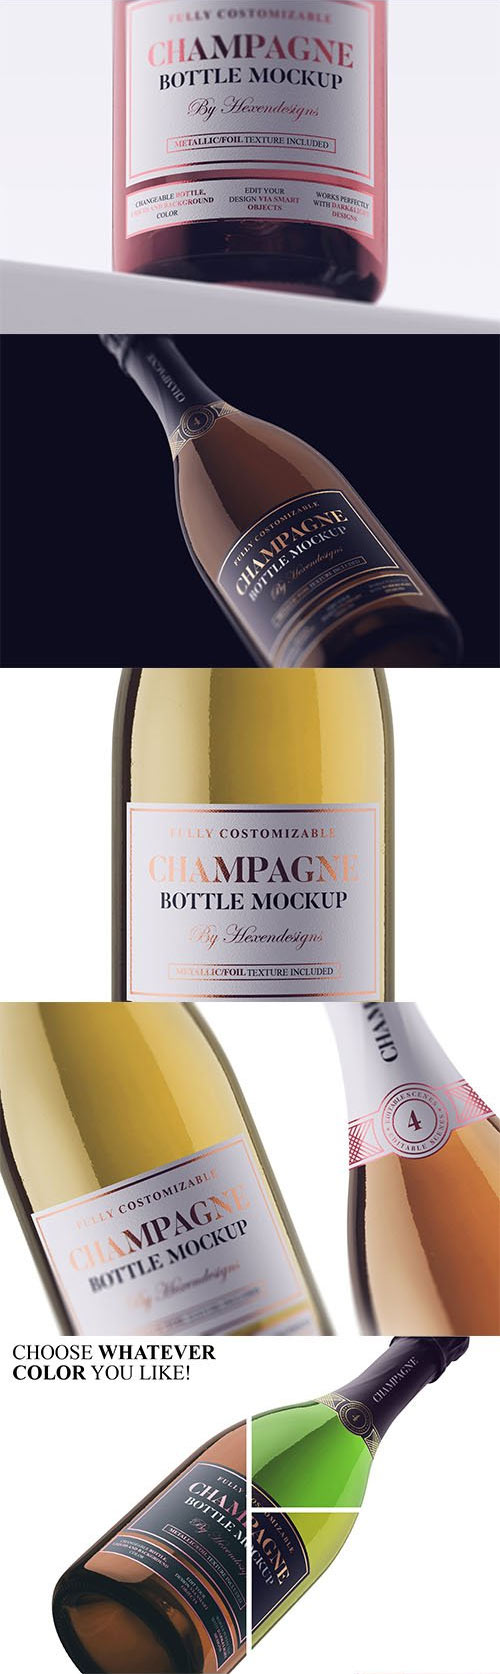 Champagne Bottle Mockup 3715822